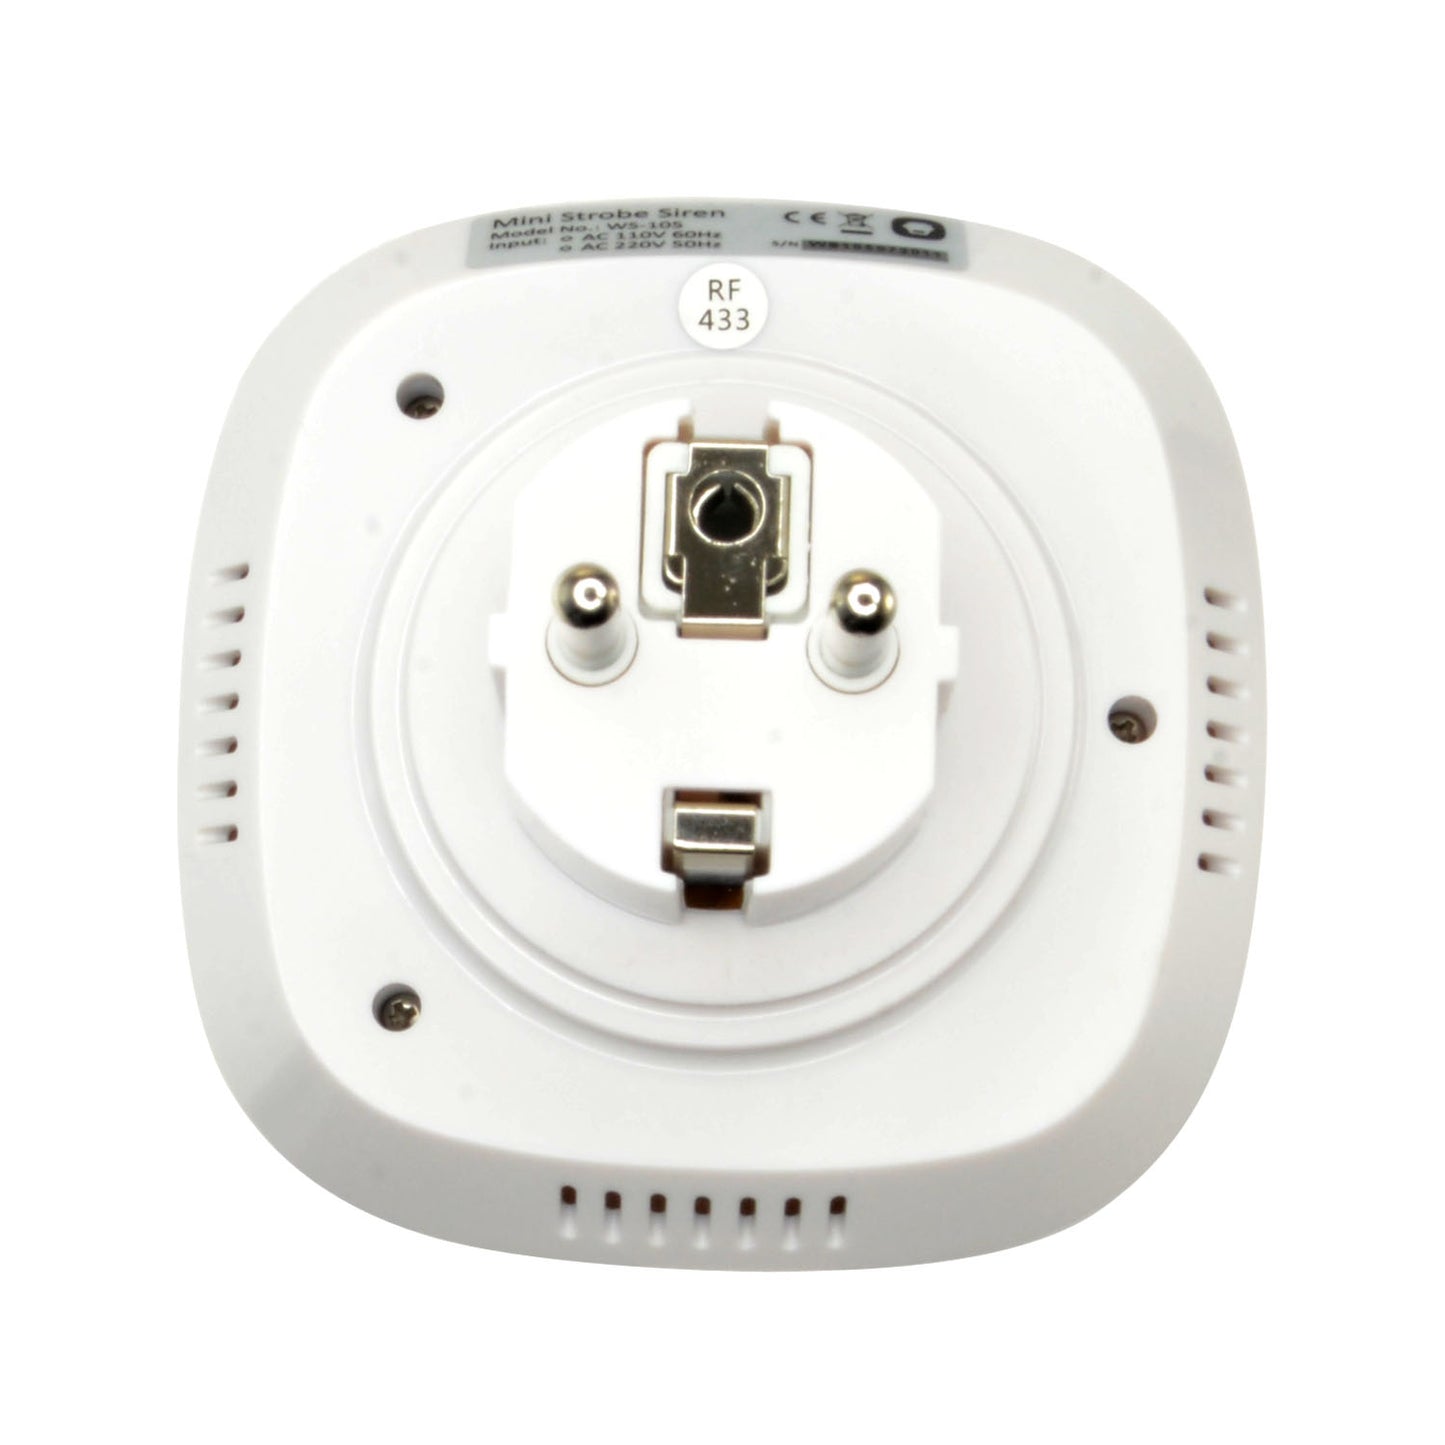 Sirena per interni - Wireless - Antenna interna - Potenza 90 dB e lampeggiante - Uso interno - Connessione diretta Plug&Play a AC 220 V